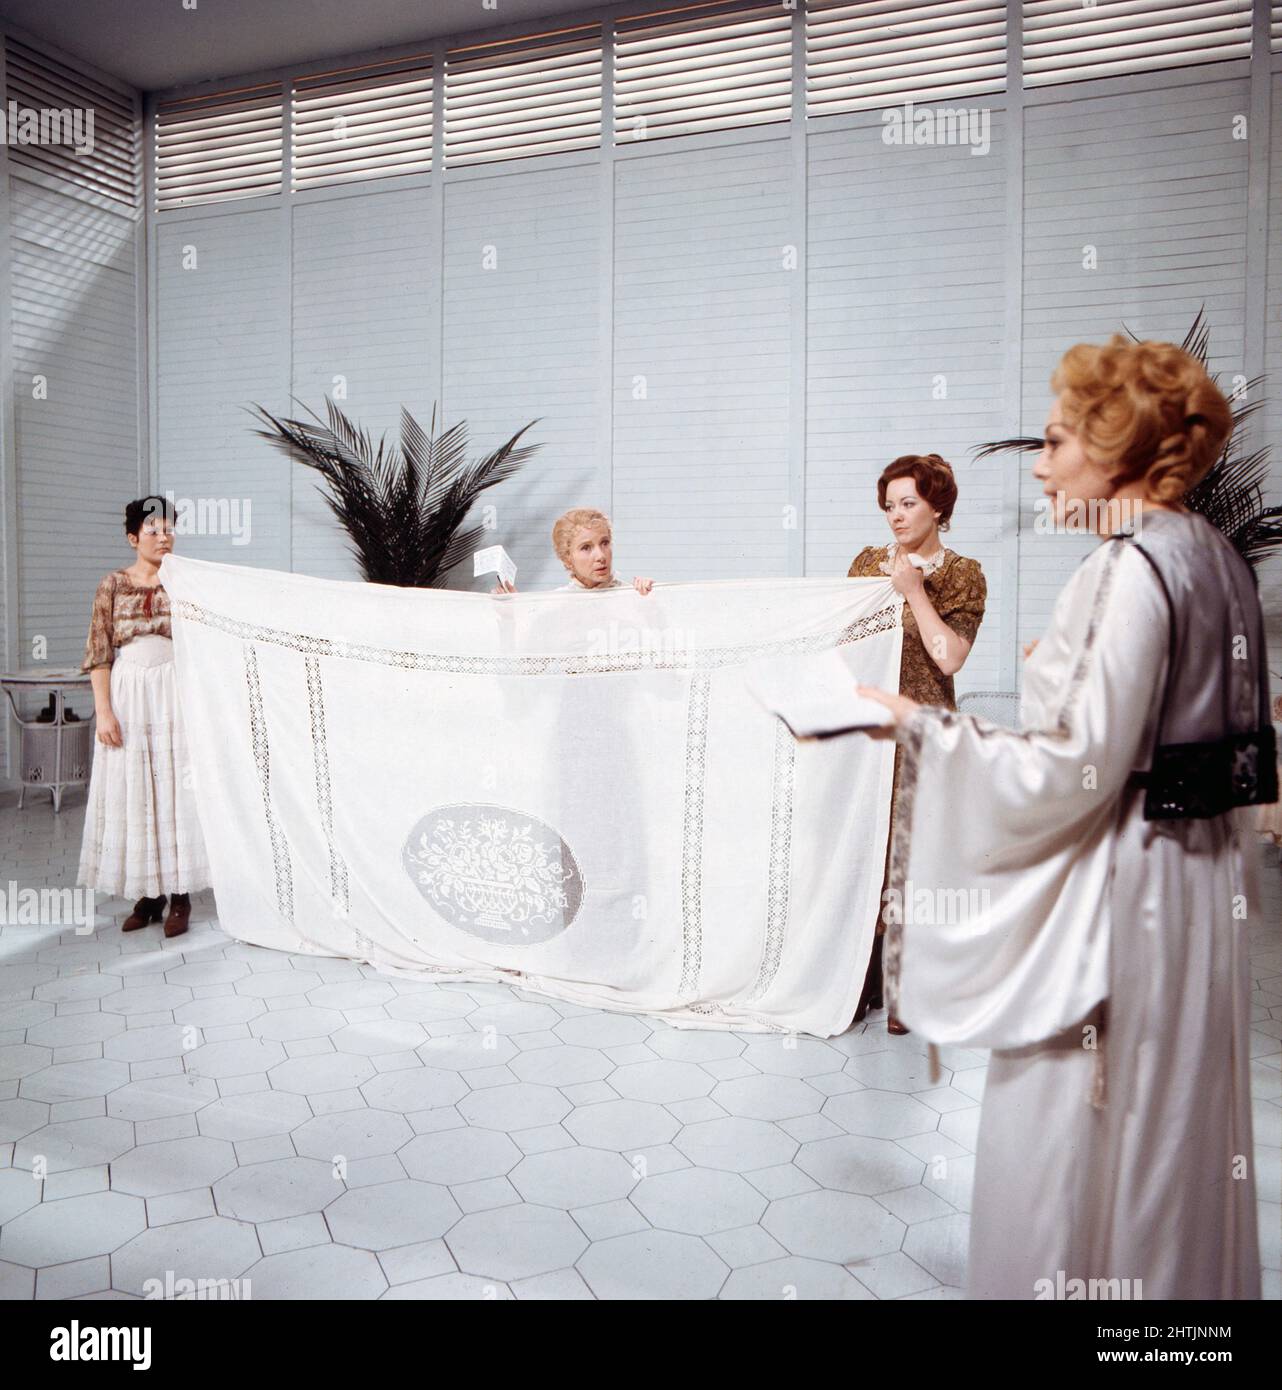 Die See, Fernsehfassung vom Theaterstück nach dem Roman von Edward Bond, Deutschland 1974, Regie: Luc Bondy, Darsteller: Lola Müthel (Mitte), Elfriede Kuzmany (rechts) Stockfoto